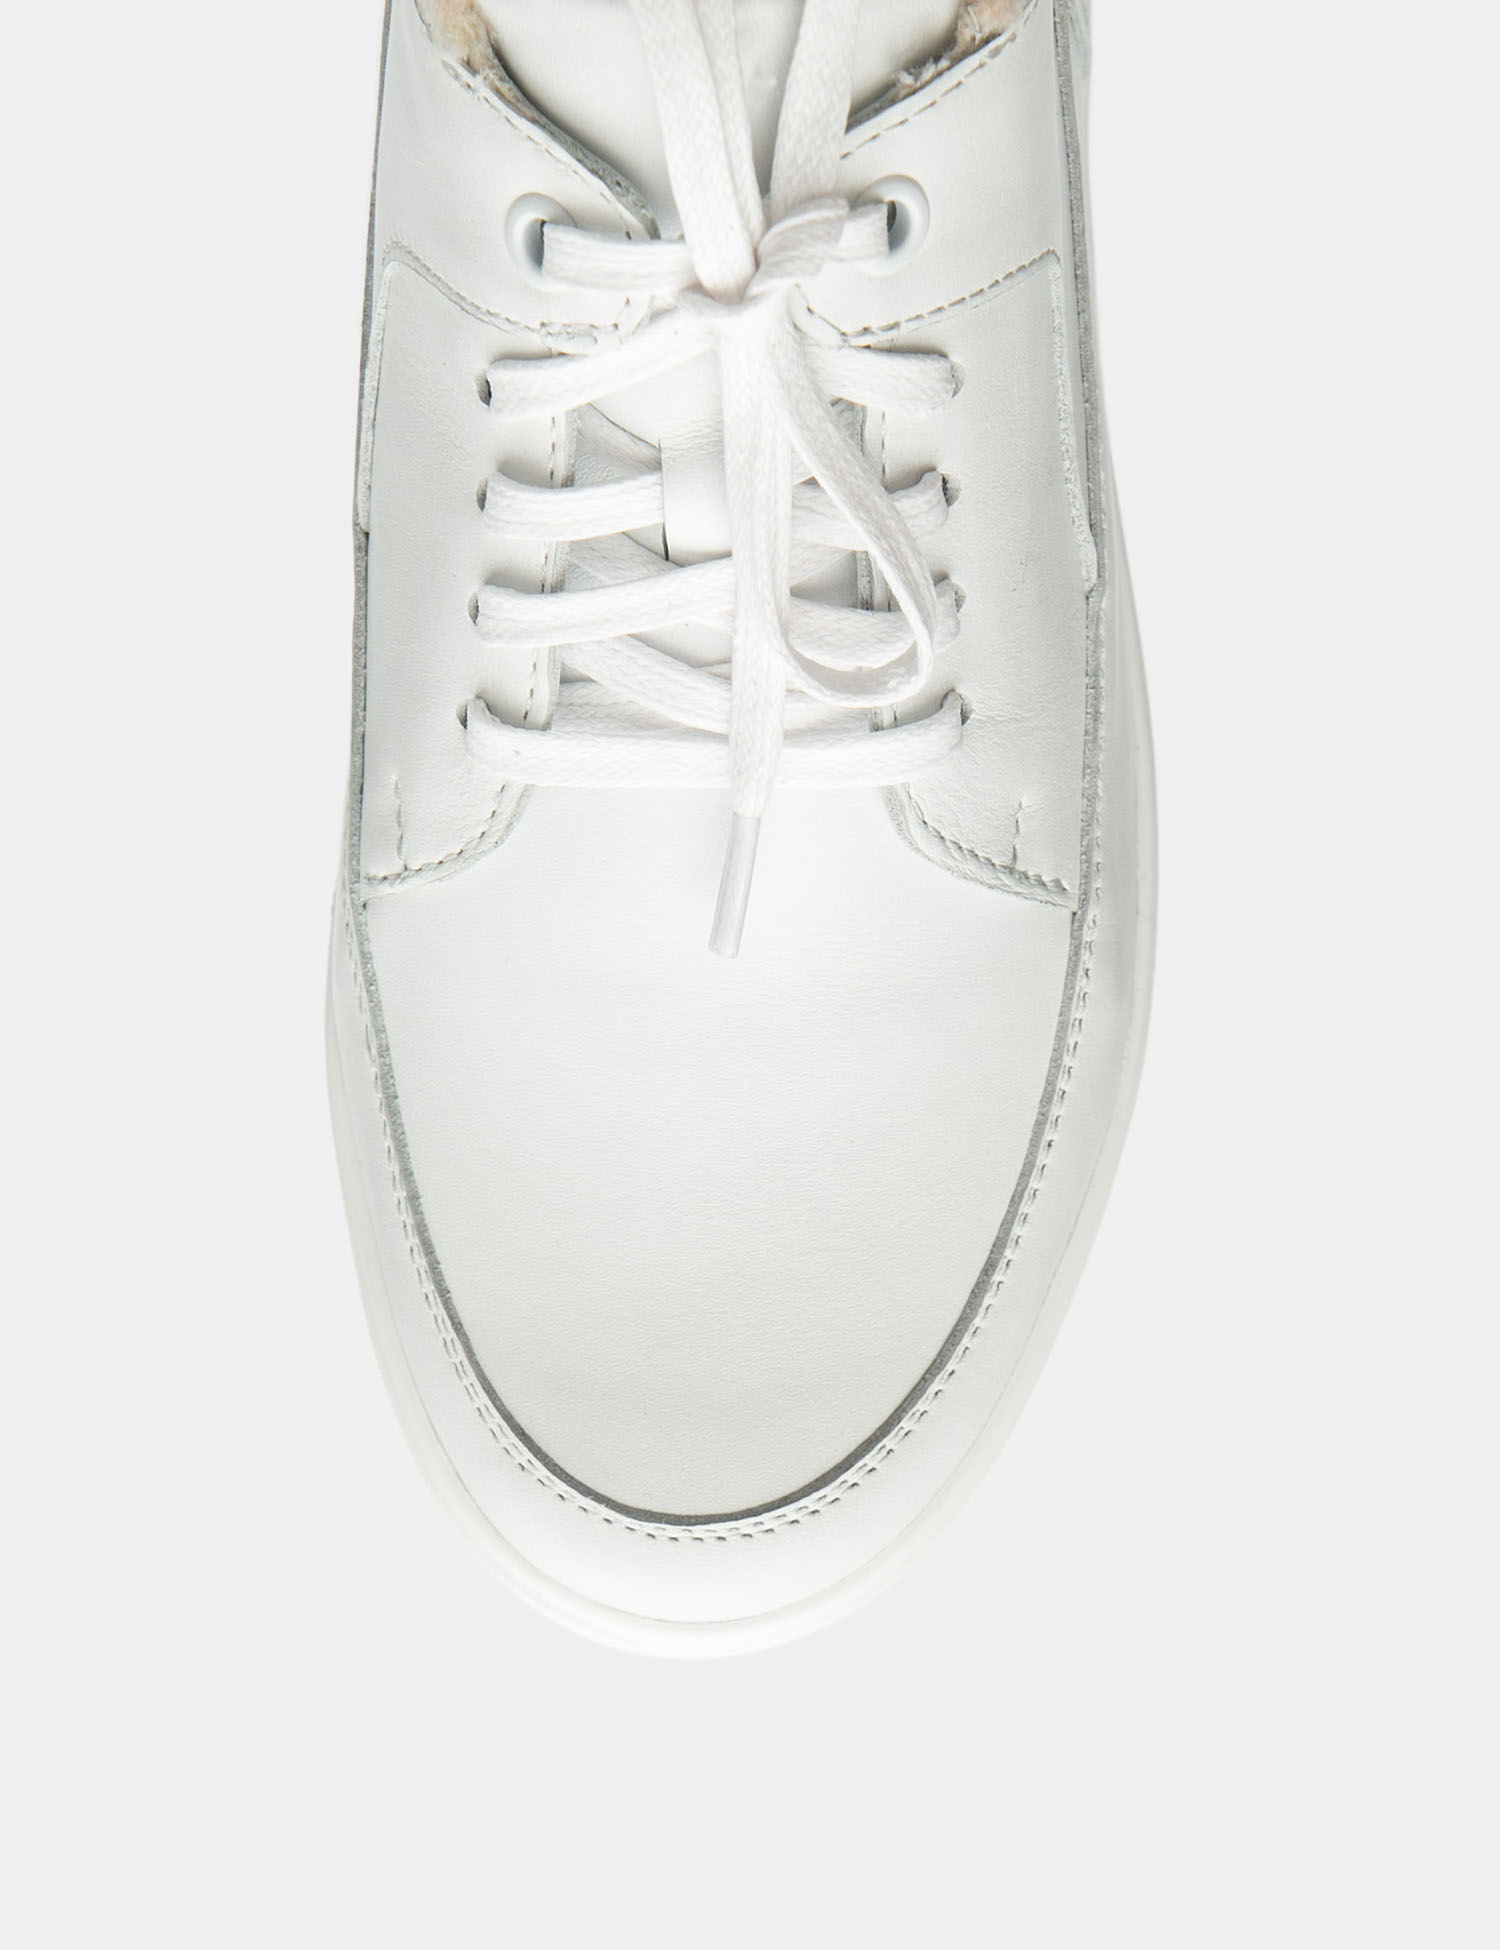 Картинка Жіночі білі шкіряні черевики